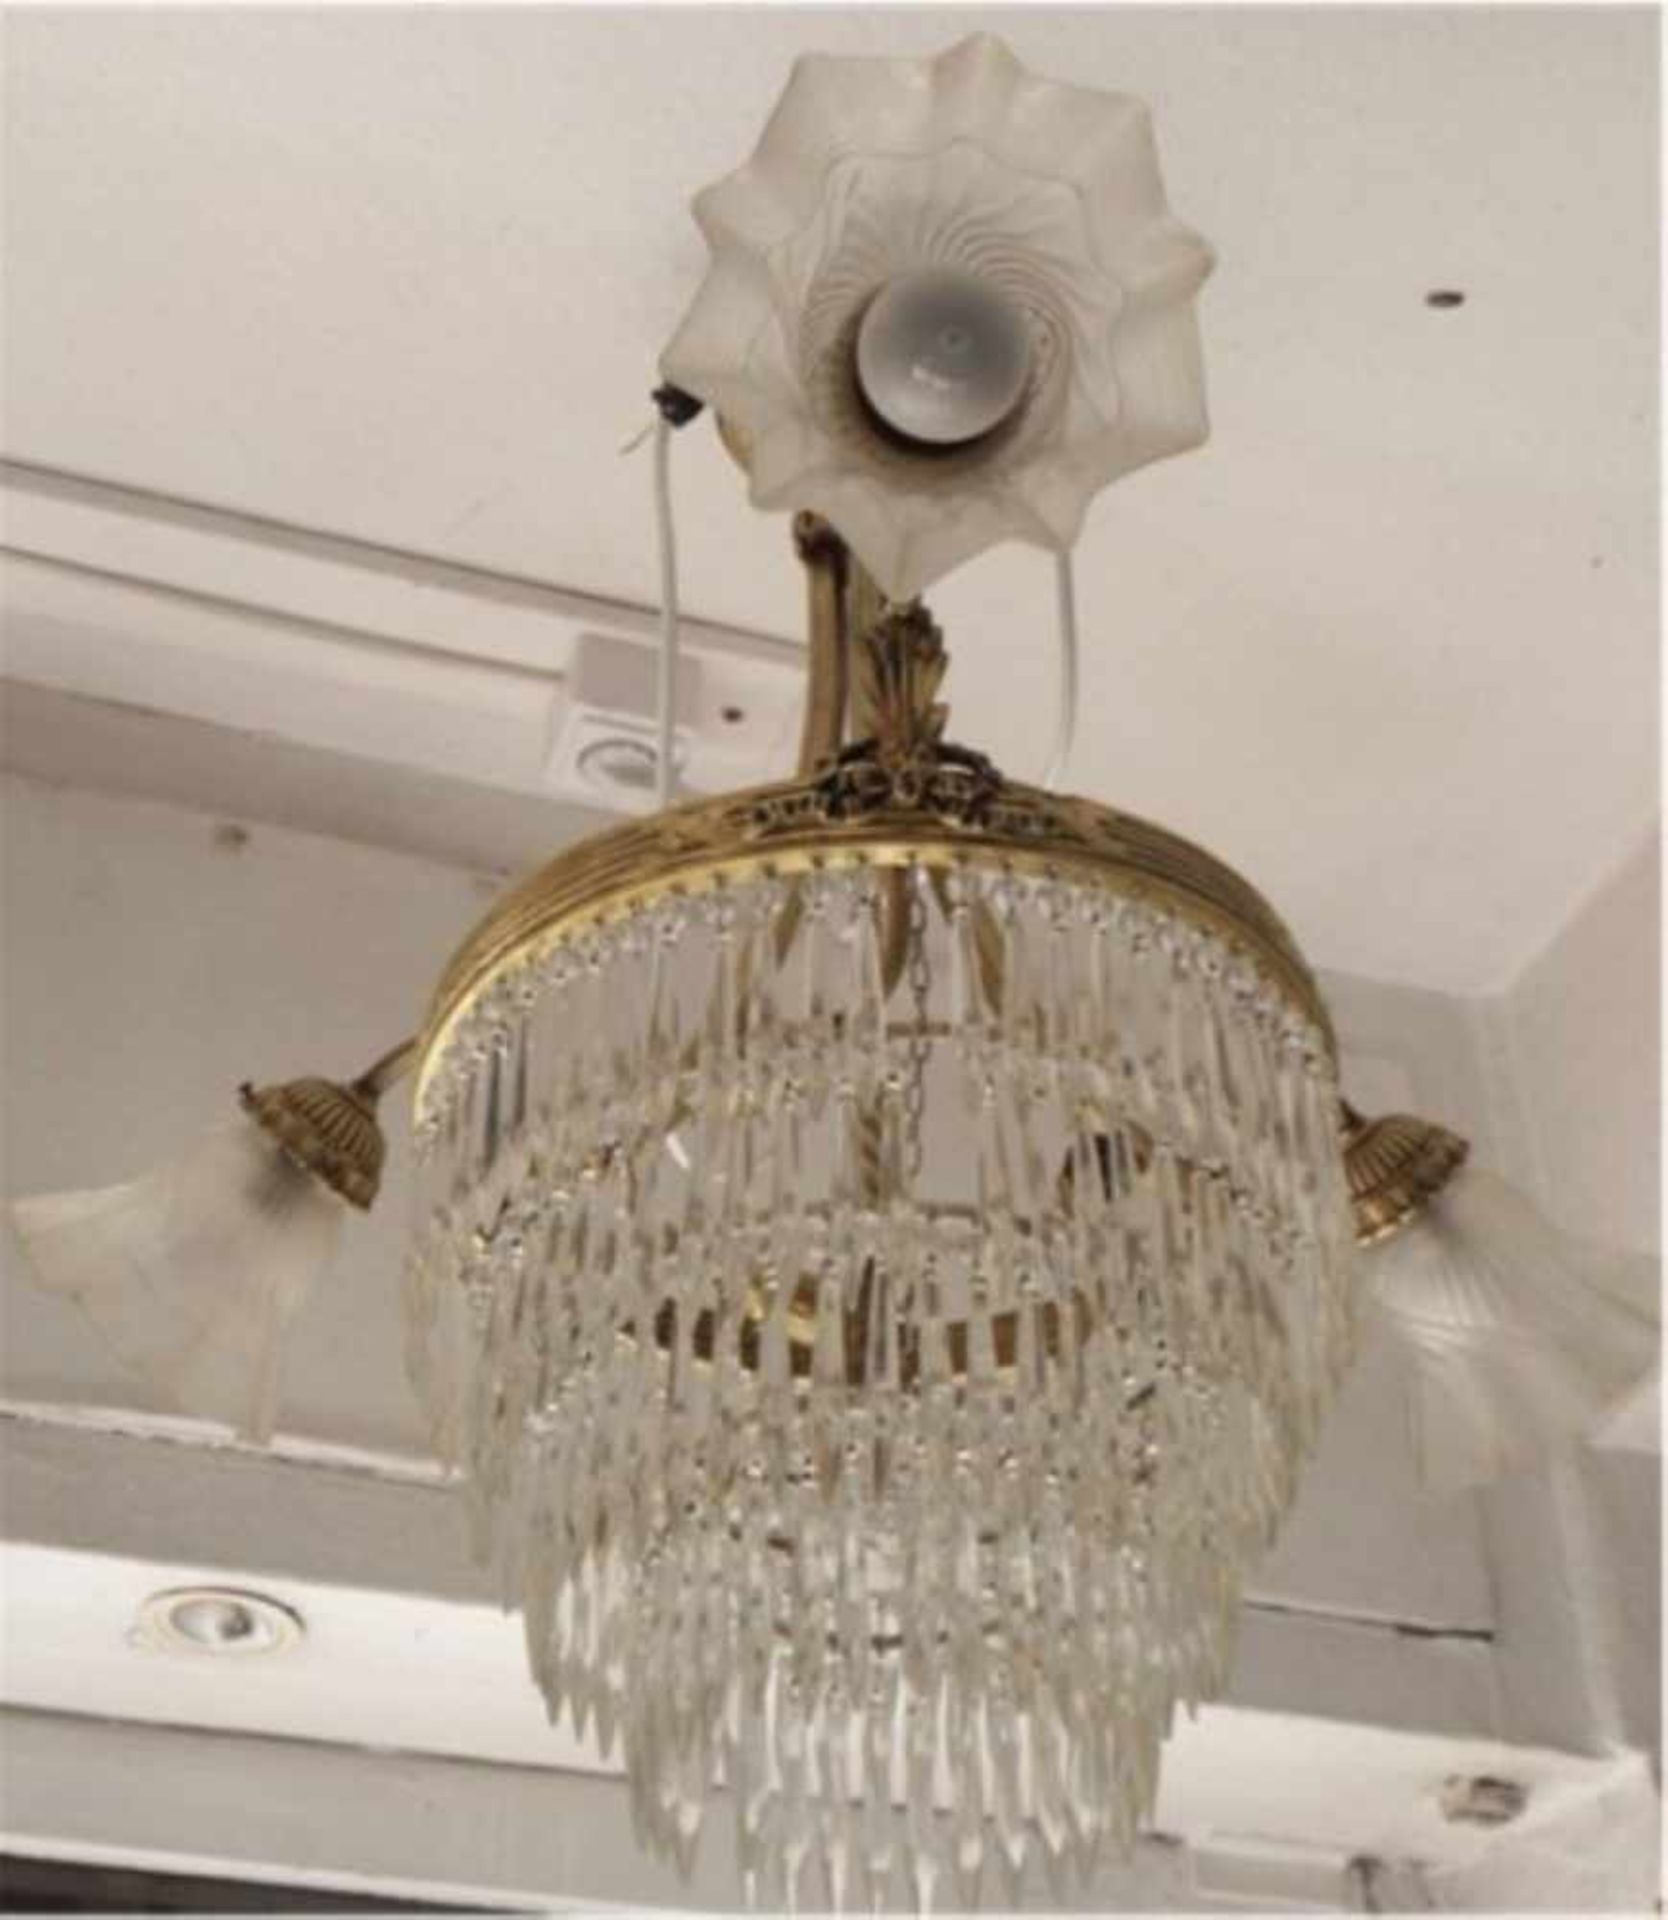 3-armige Jugendstil Deckenlampe mit aufwendigen Glasprismenbehang, floral verzierte Messingmontur